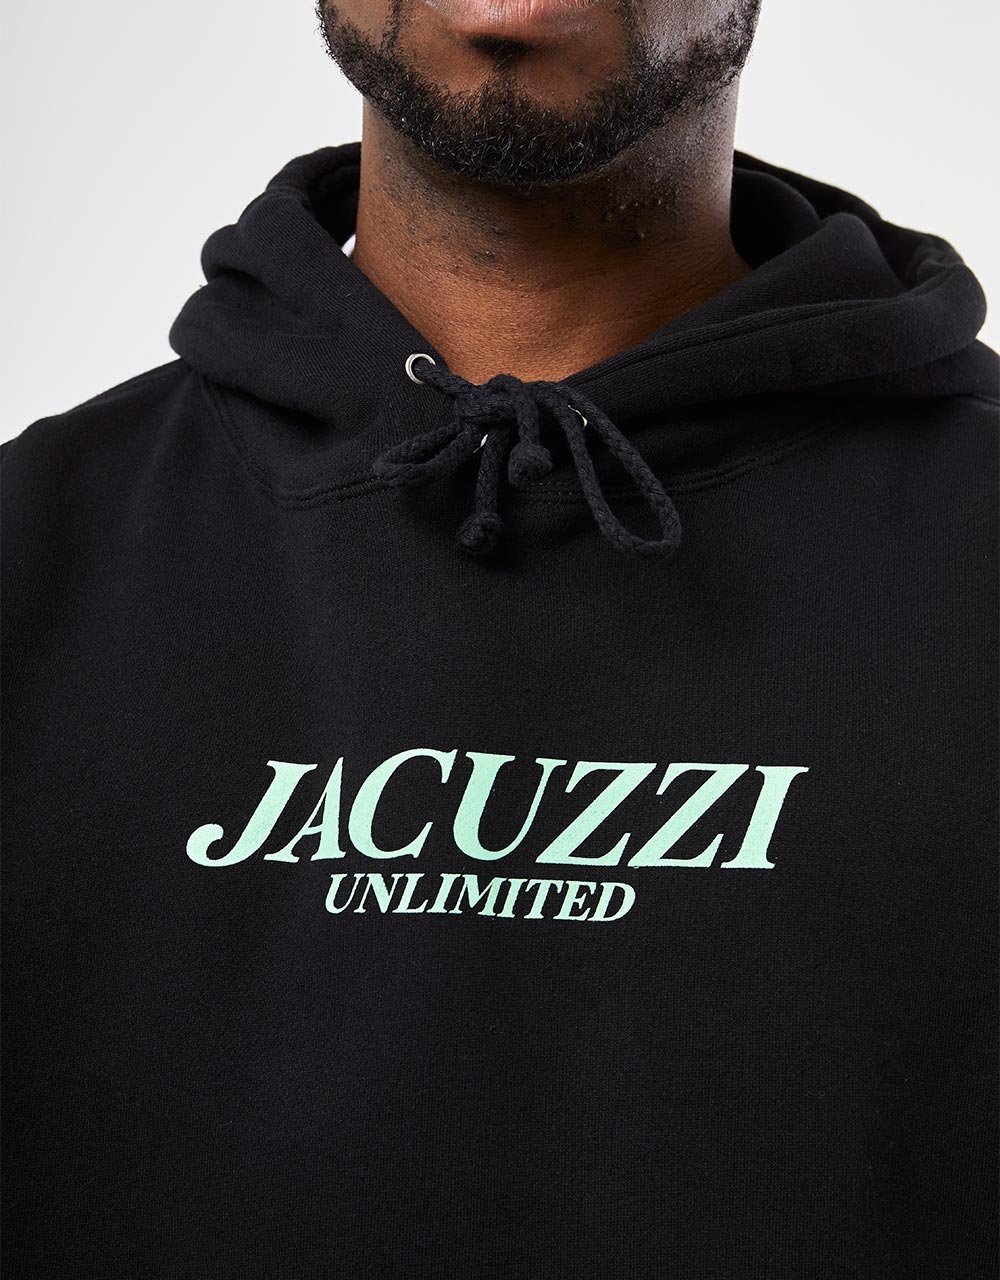 Jacuzzi Flavor Pullover Hoodie - Black